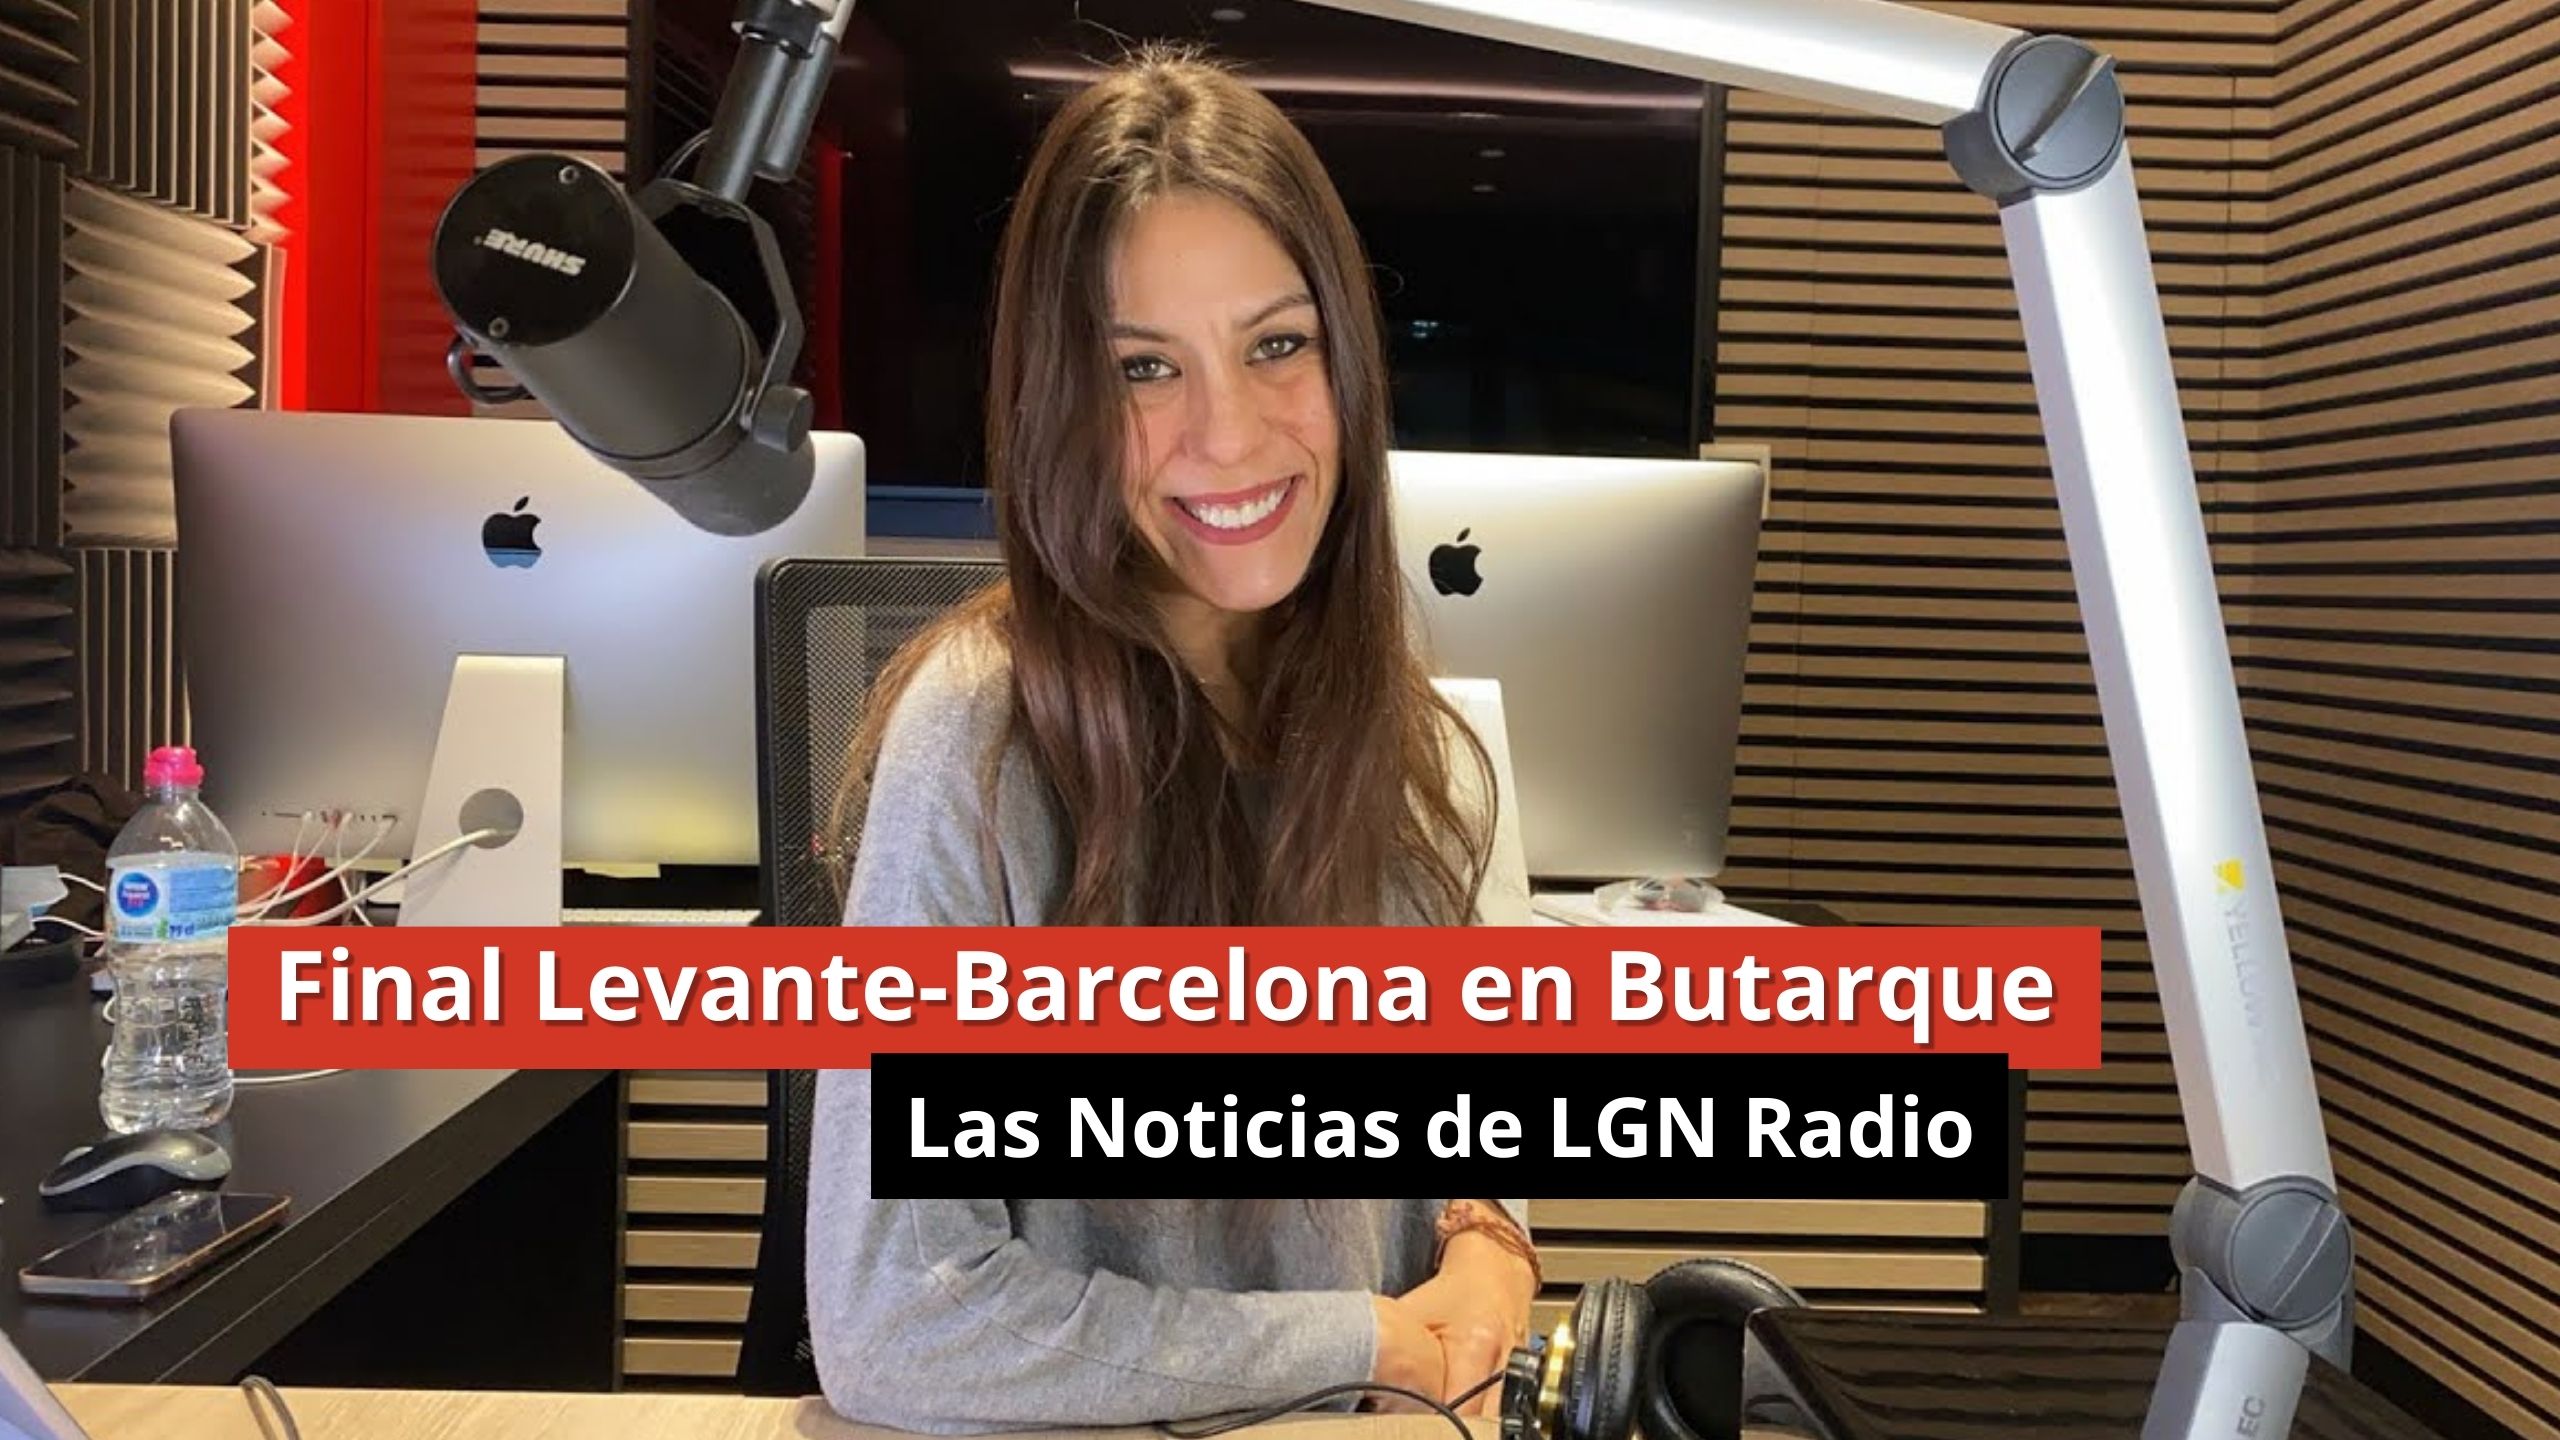 19-01-24 Final Levante-Barcelona en Butarque - Las Noticias de LGN Radio